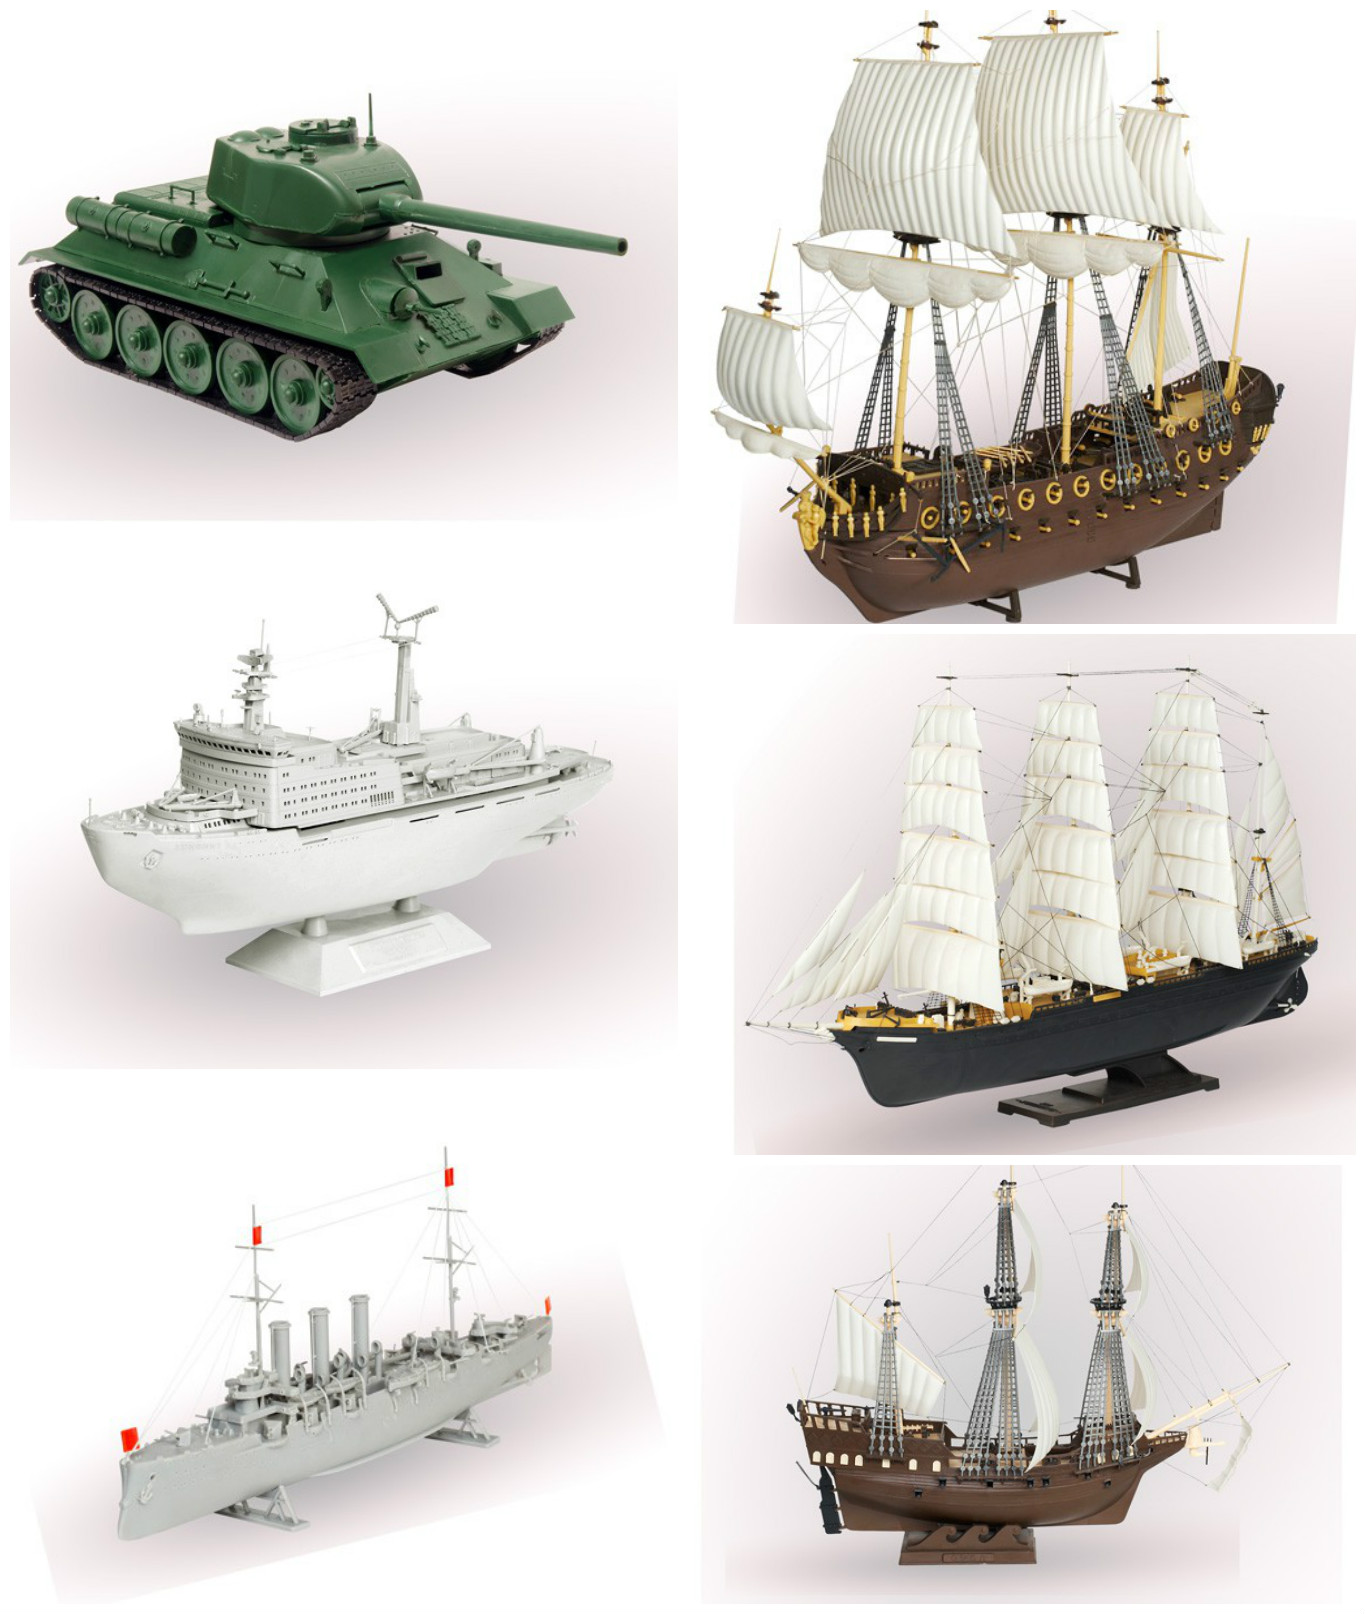 Сборка корабля из пластика. Модель для склеивания корабль. Модели военных кораблей для сборки. Модели из пластмассы. Модели кораблей для склеивания из пластика.